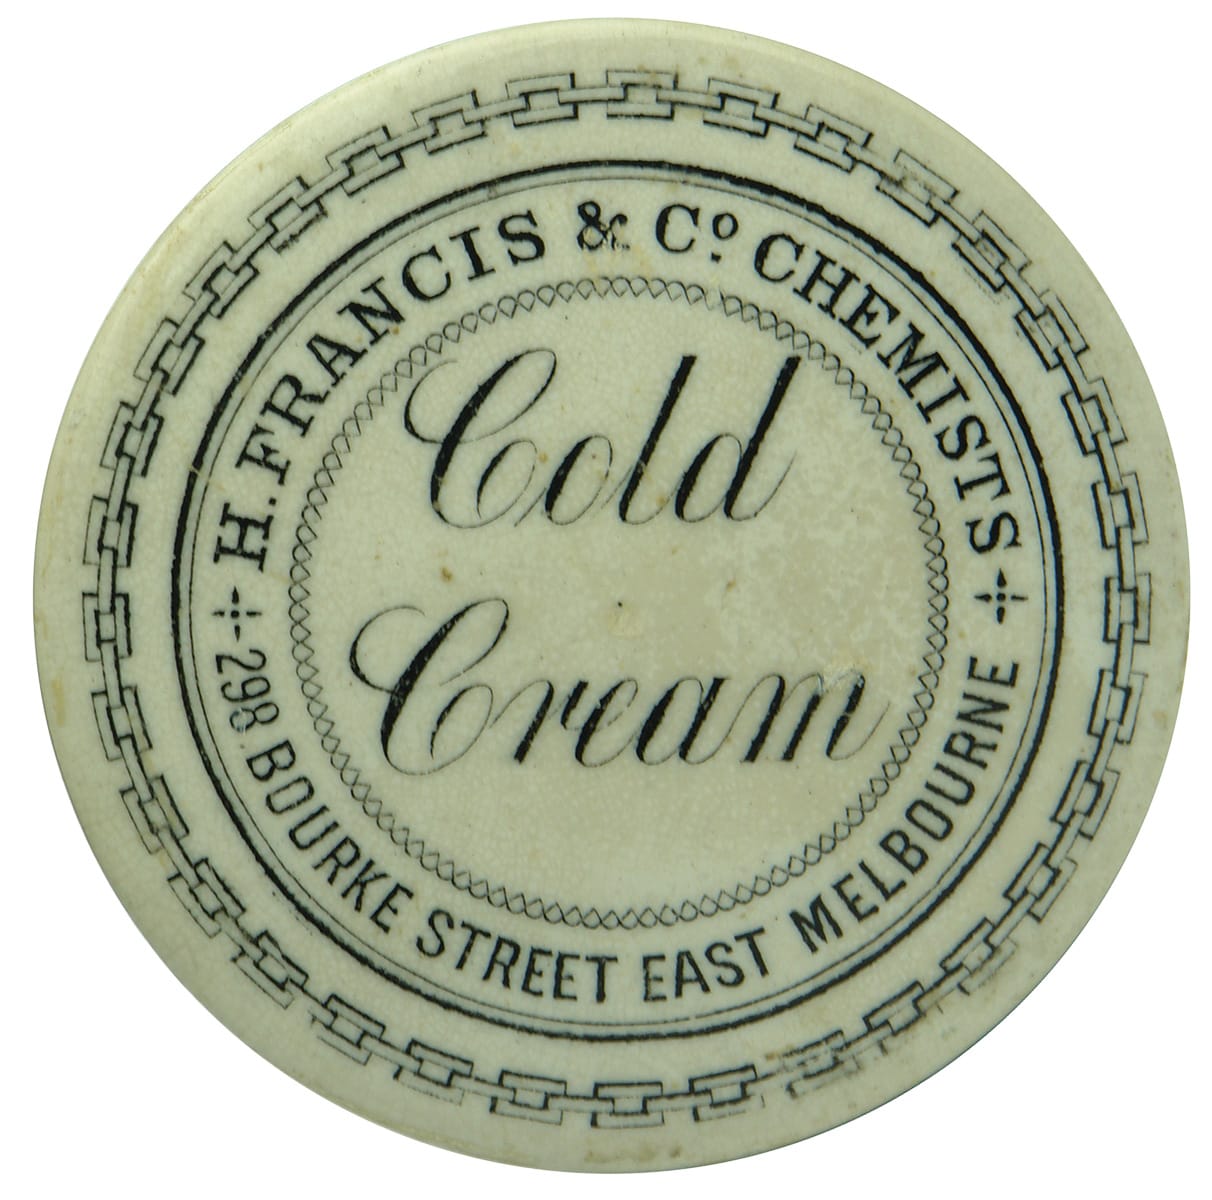 Francis Chemists Cold Cream Melbourne Pot Lid